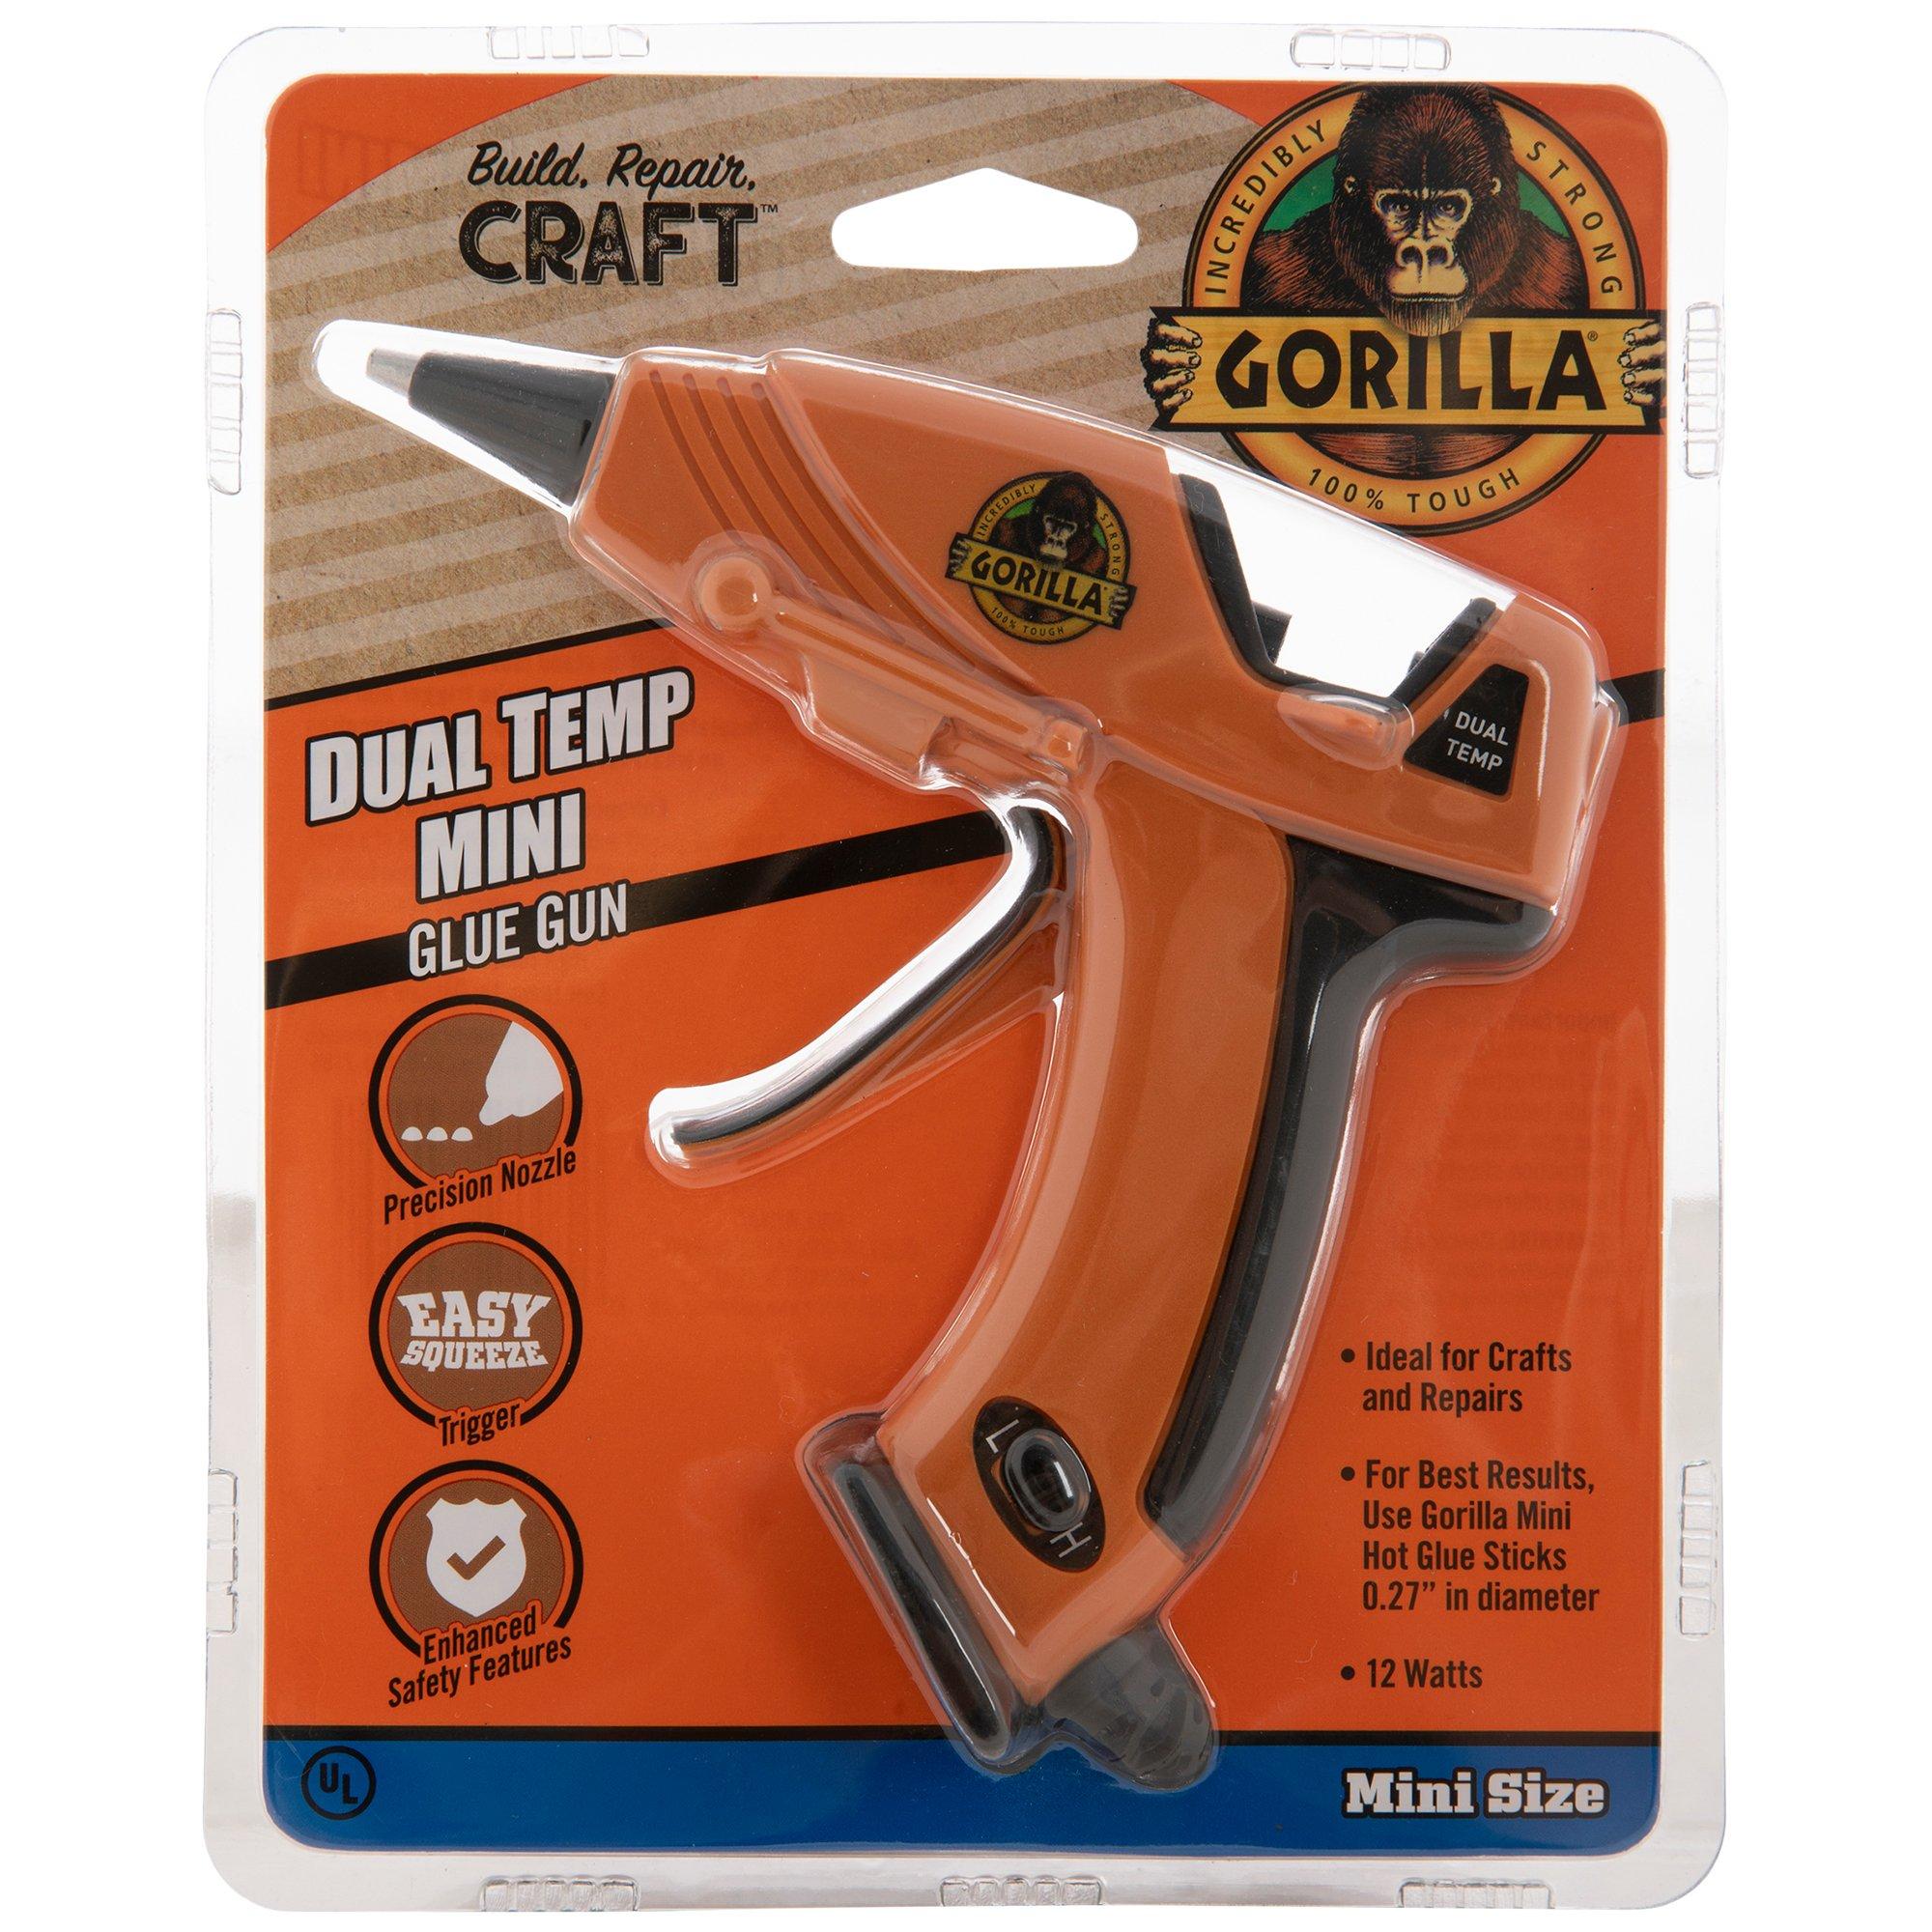 Mini Gorilla Dual Temp Glue Gun, Hobby Lobby